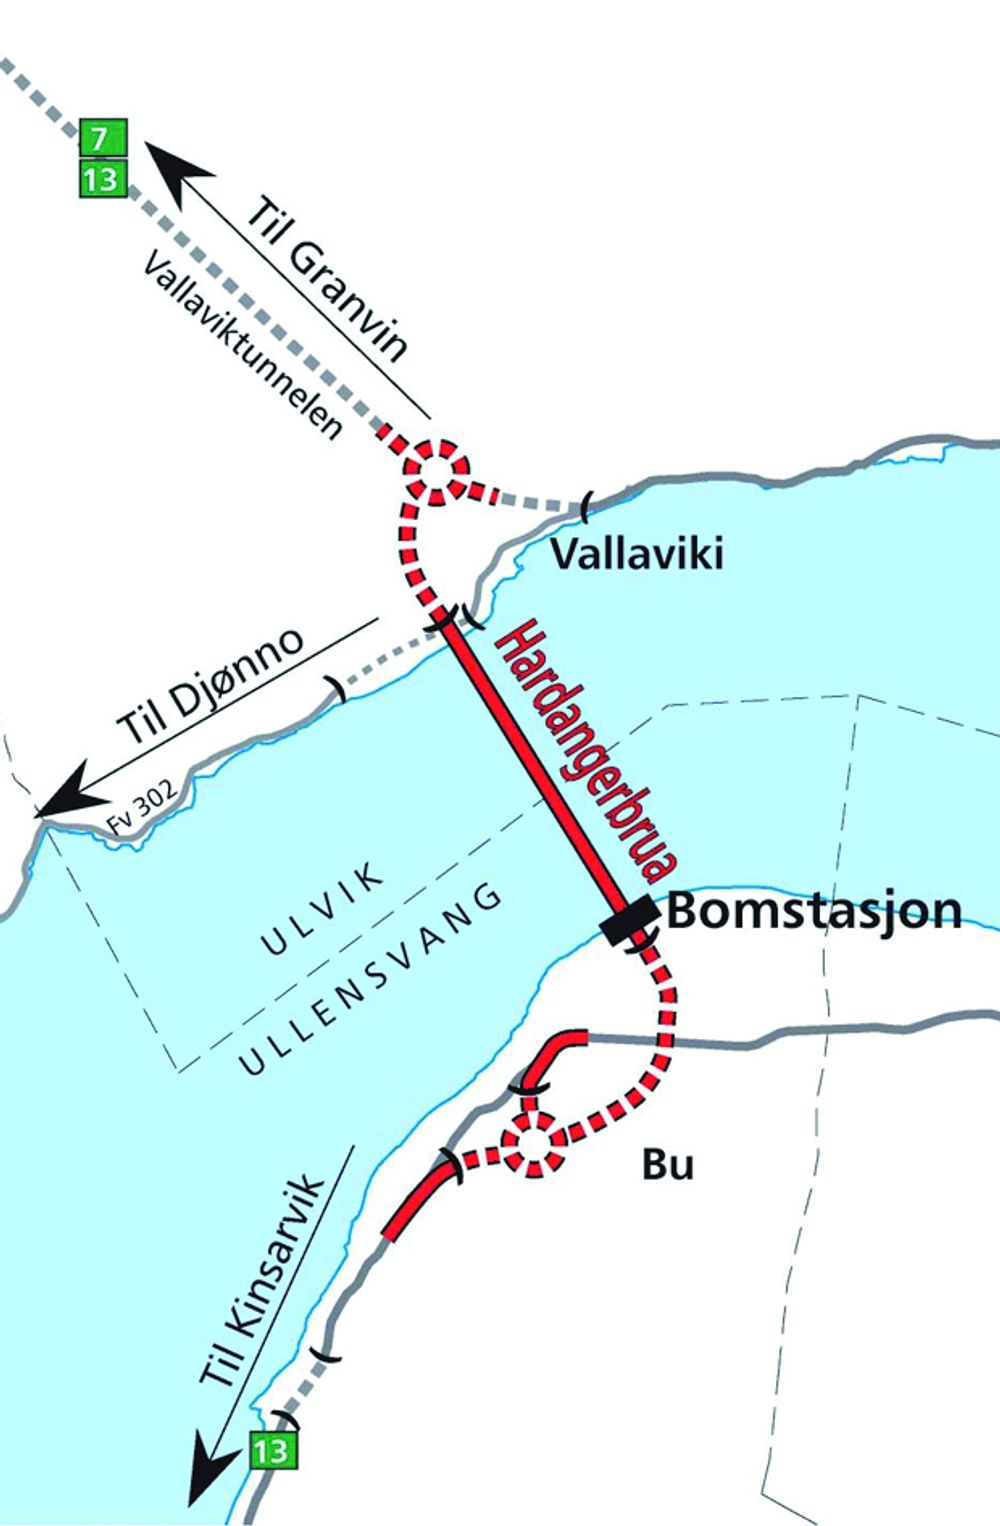 DETALJKART: Her er et detaljkart som viser hvor brua skal krysse fjorden. Merk at bomstasjonene kommer på Bu-siden av brua. De stiplete linjene markerer tunnel.